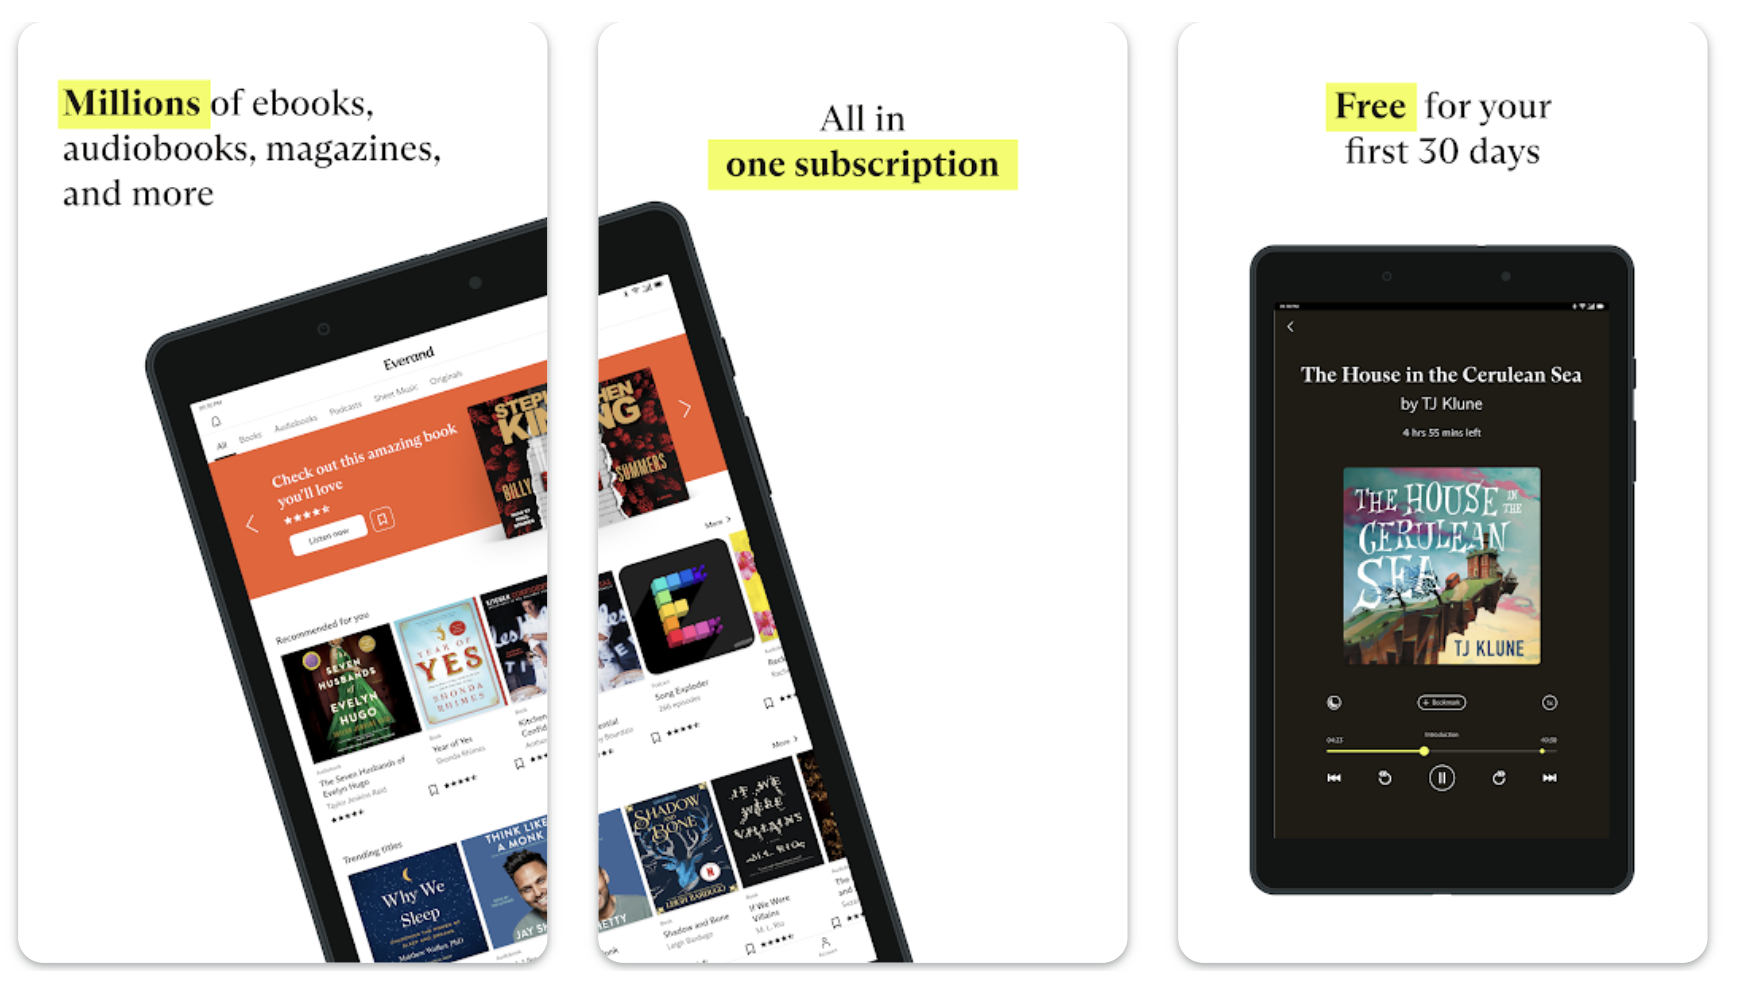 Titres de livres affichés sur l'application Everand sur iPad et mobile